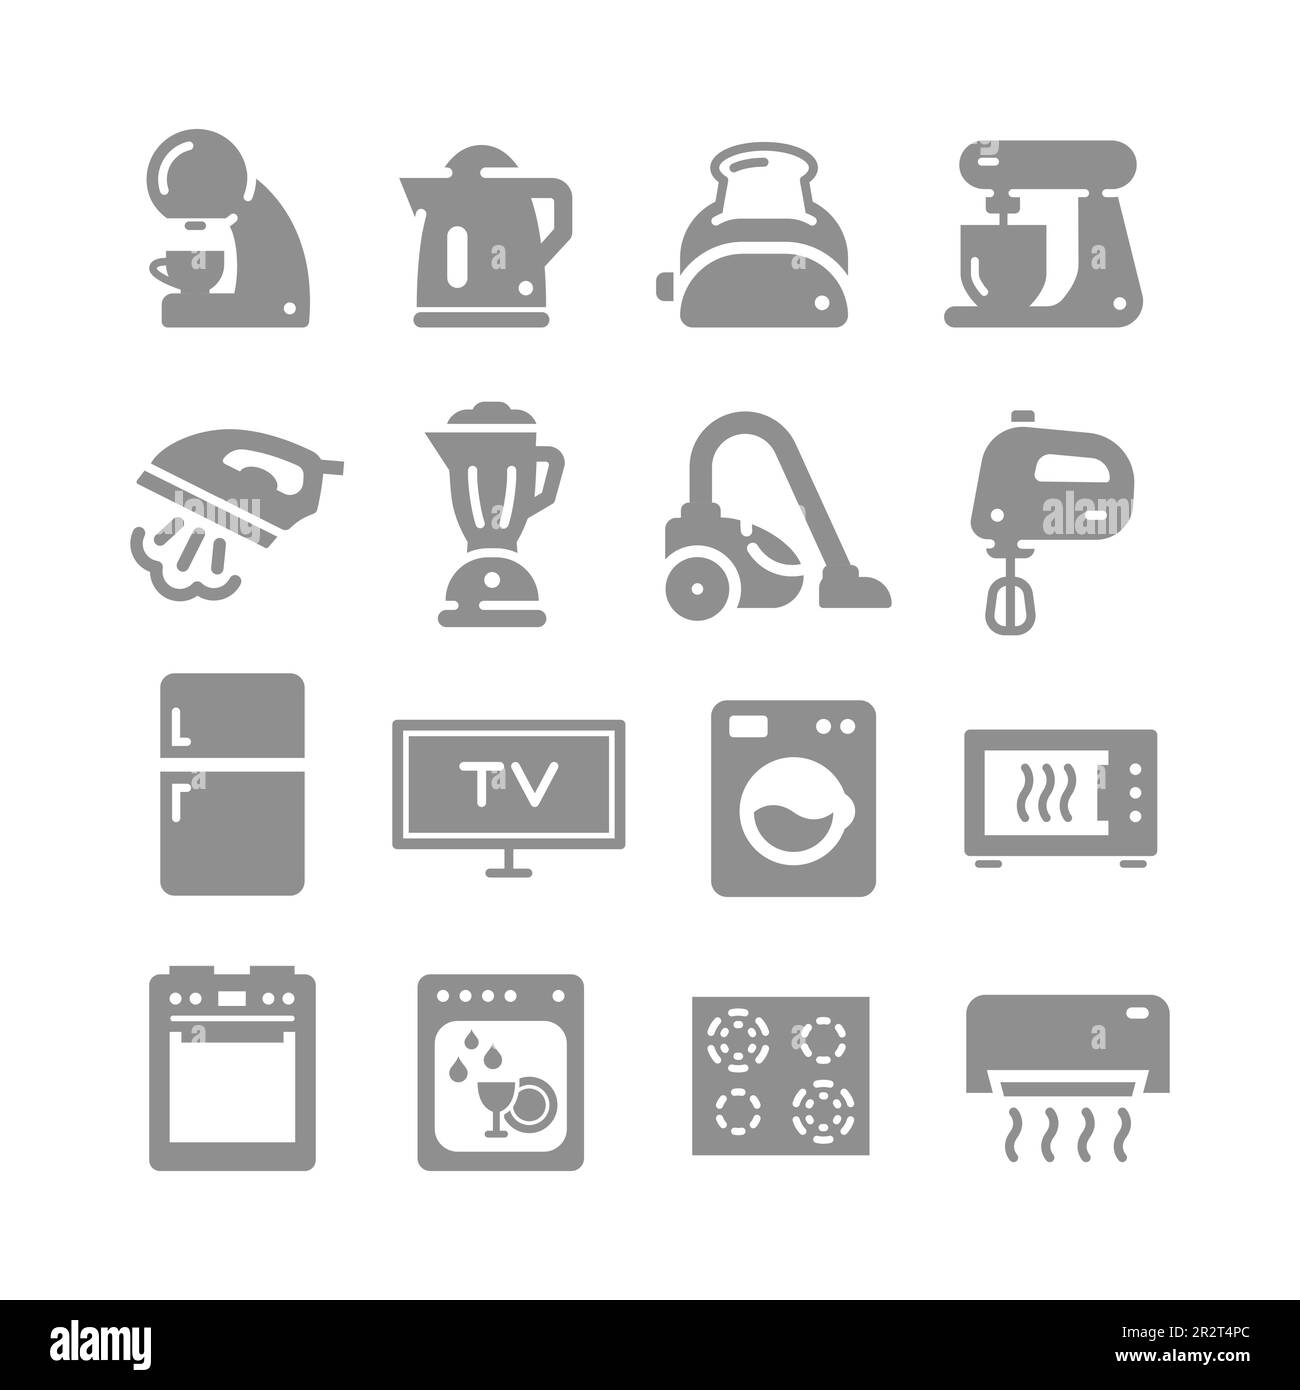 Gli elettrodomestici riempiono il set di icone vettoriali. Elettrodomestici, forno, icone stufa. Illustrazione Vettoriale